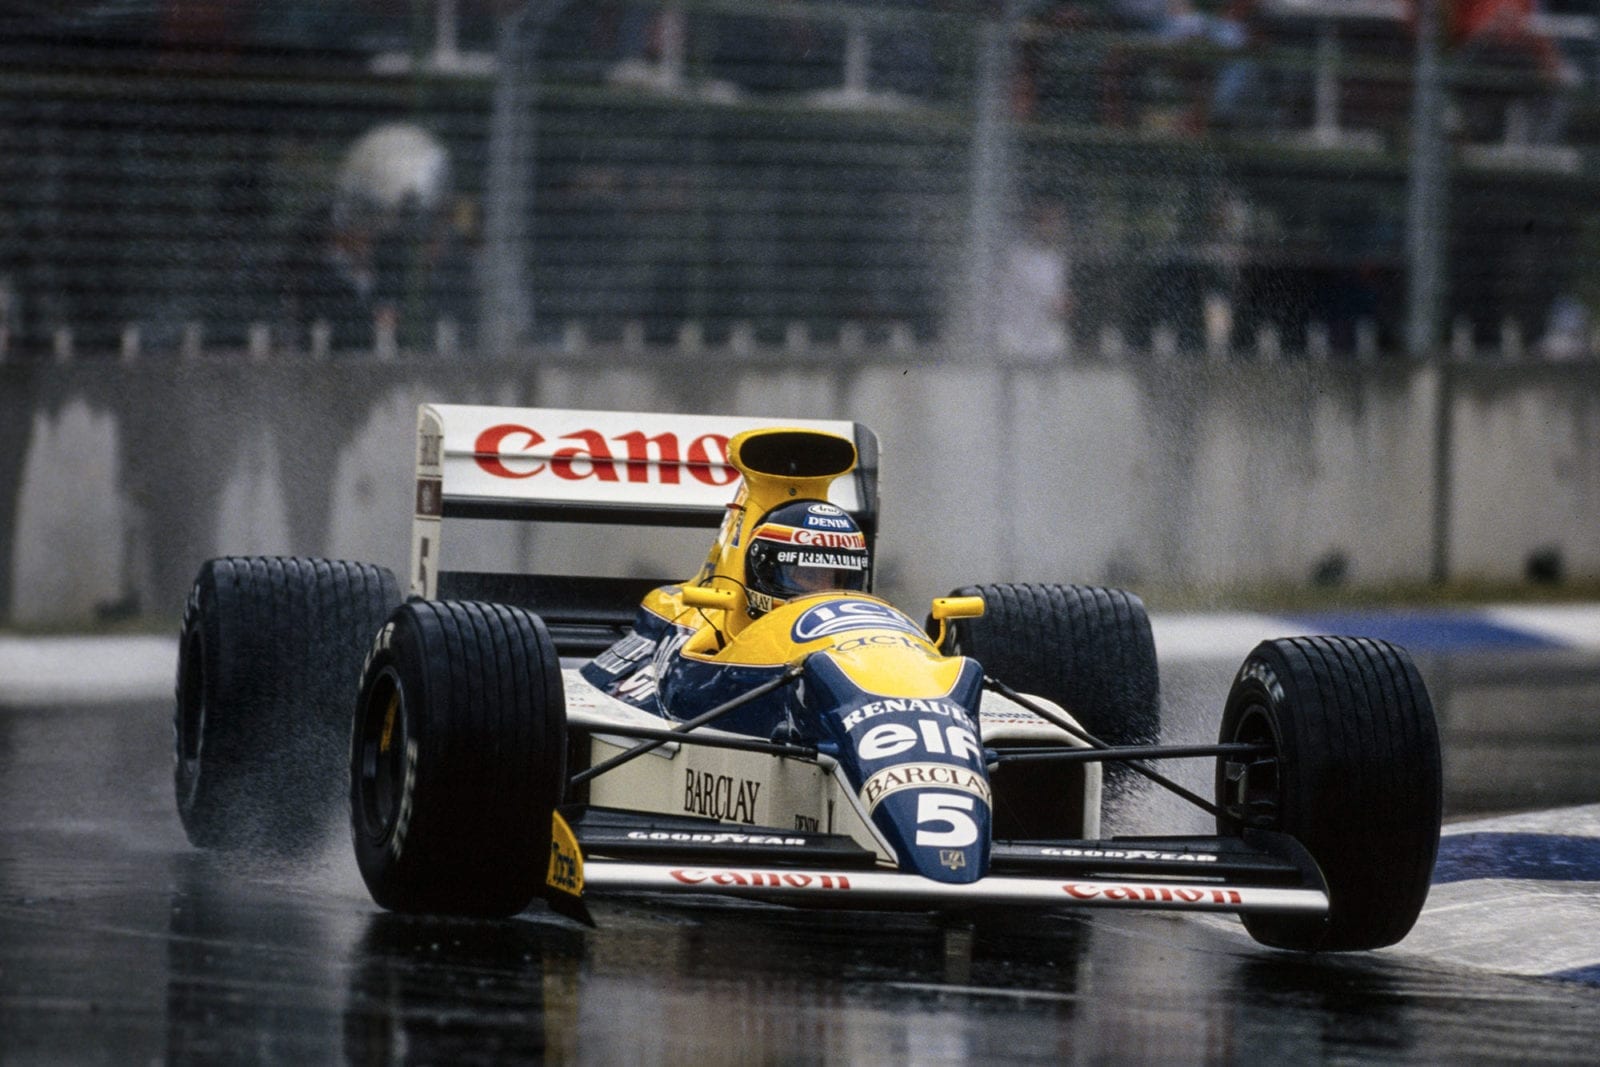 1989 AUS GP feature